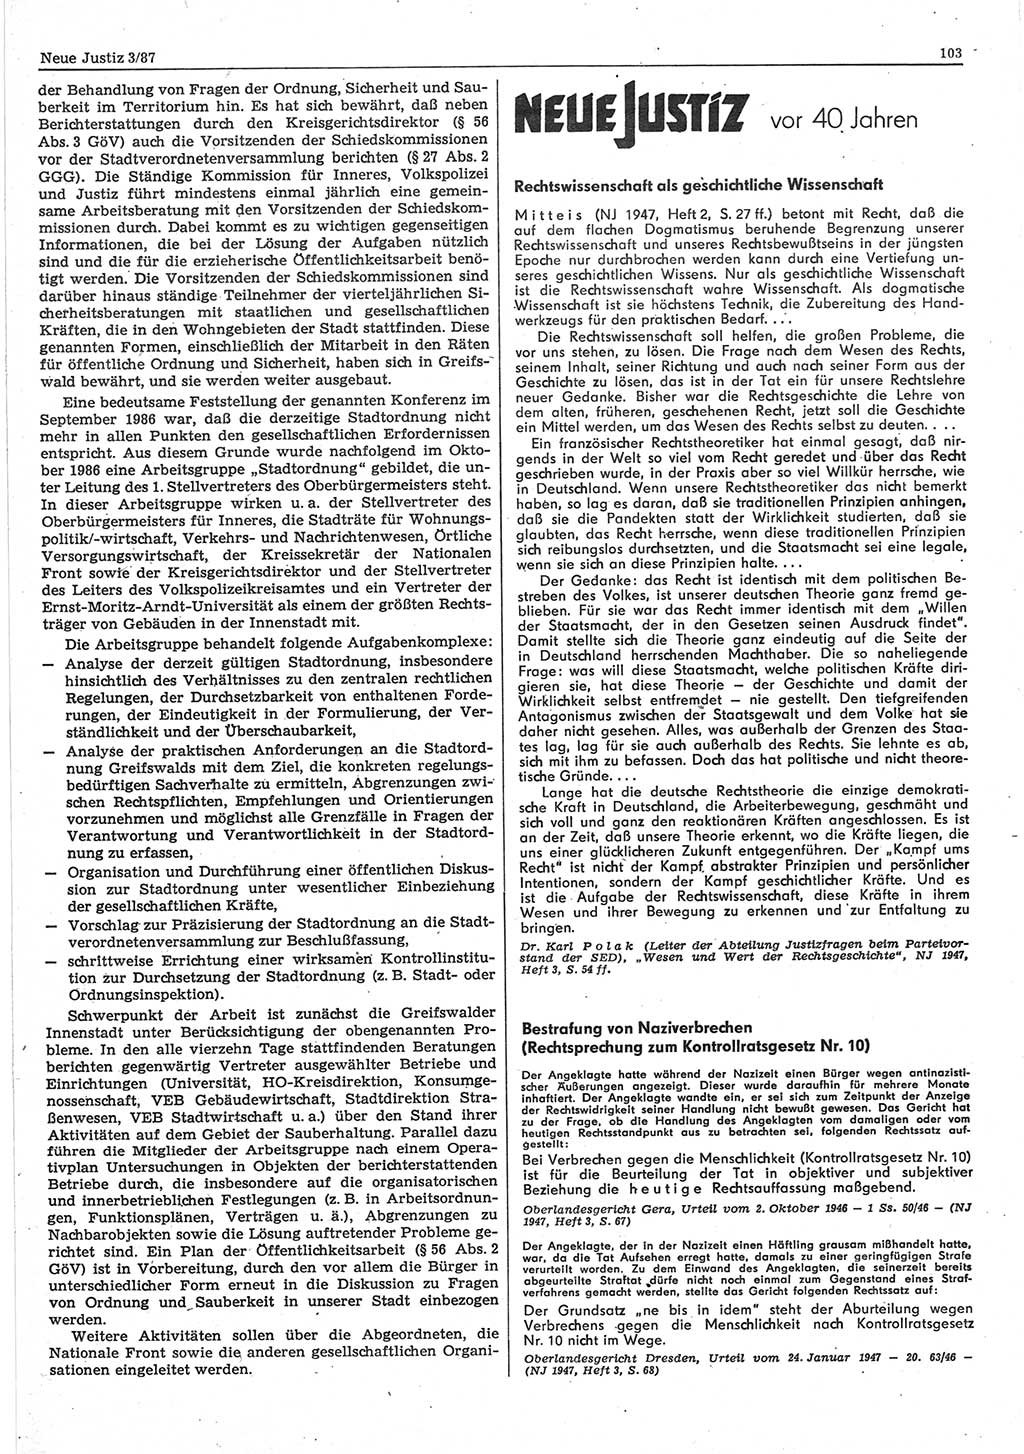 Neue Justiz (NJ), Zeitschrift für sozialistisches Recht und Gesetzlichkeit [Deutsche Demokratische Republik (DDR)], 41. Jahrgang 1987, Seite 103 (NJ DDR 1987, S. 103)